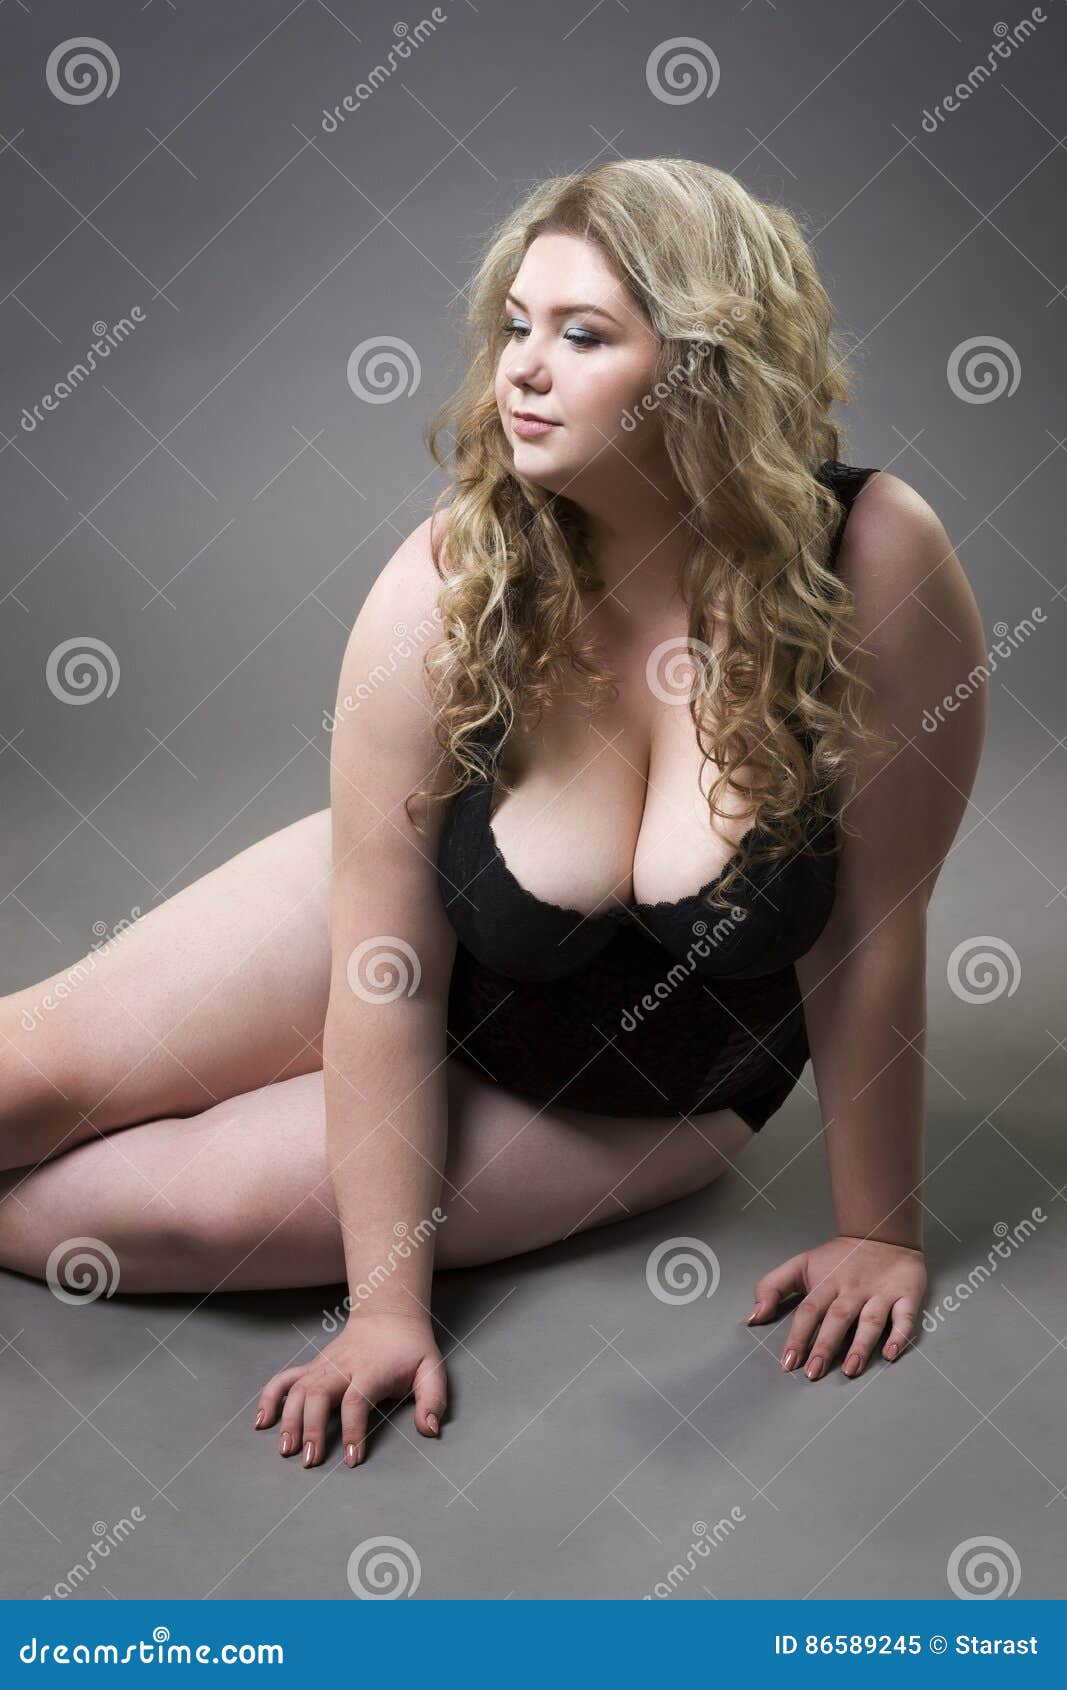 daniel galan recommends big natural tits pic